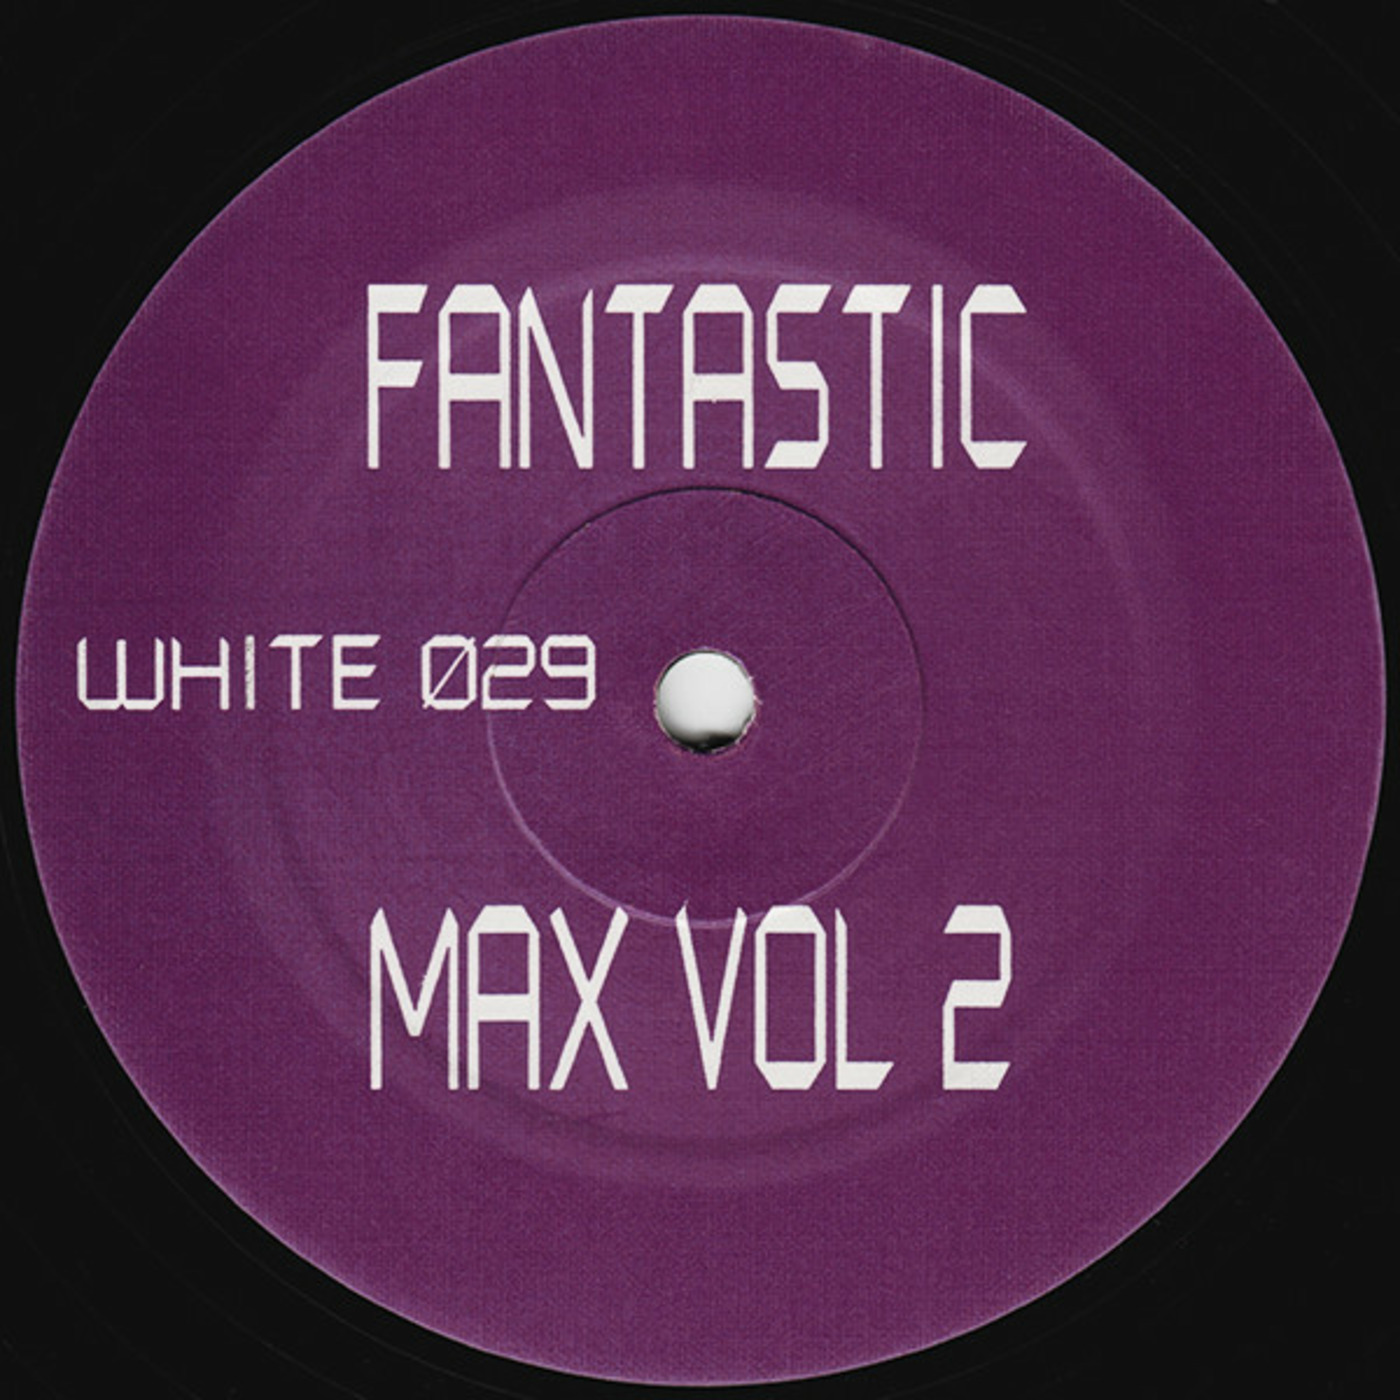 Fantastic Max Vol 2 - Untitled (A)